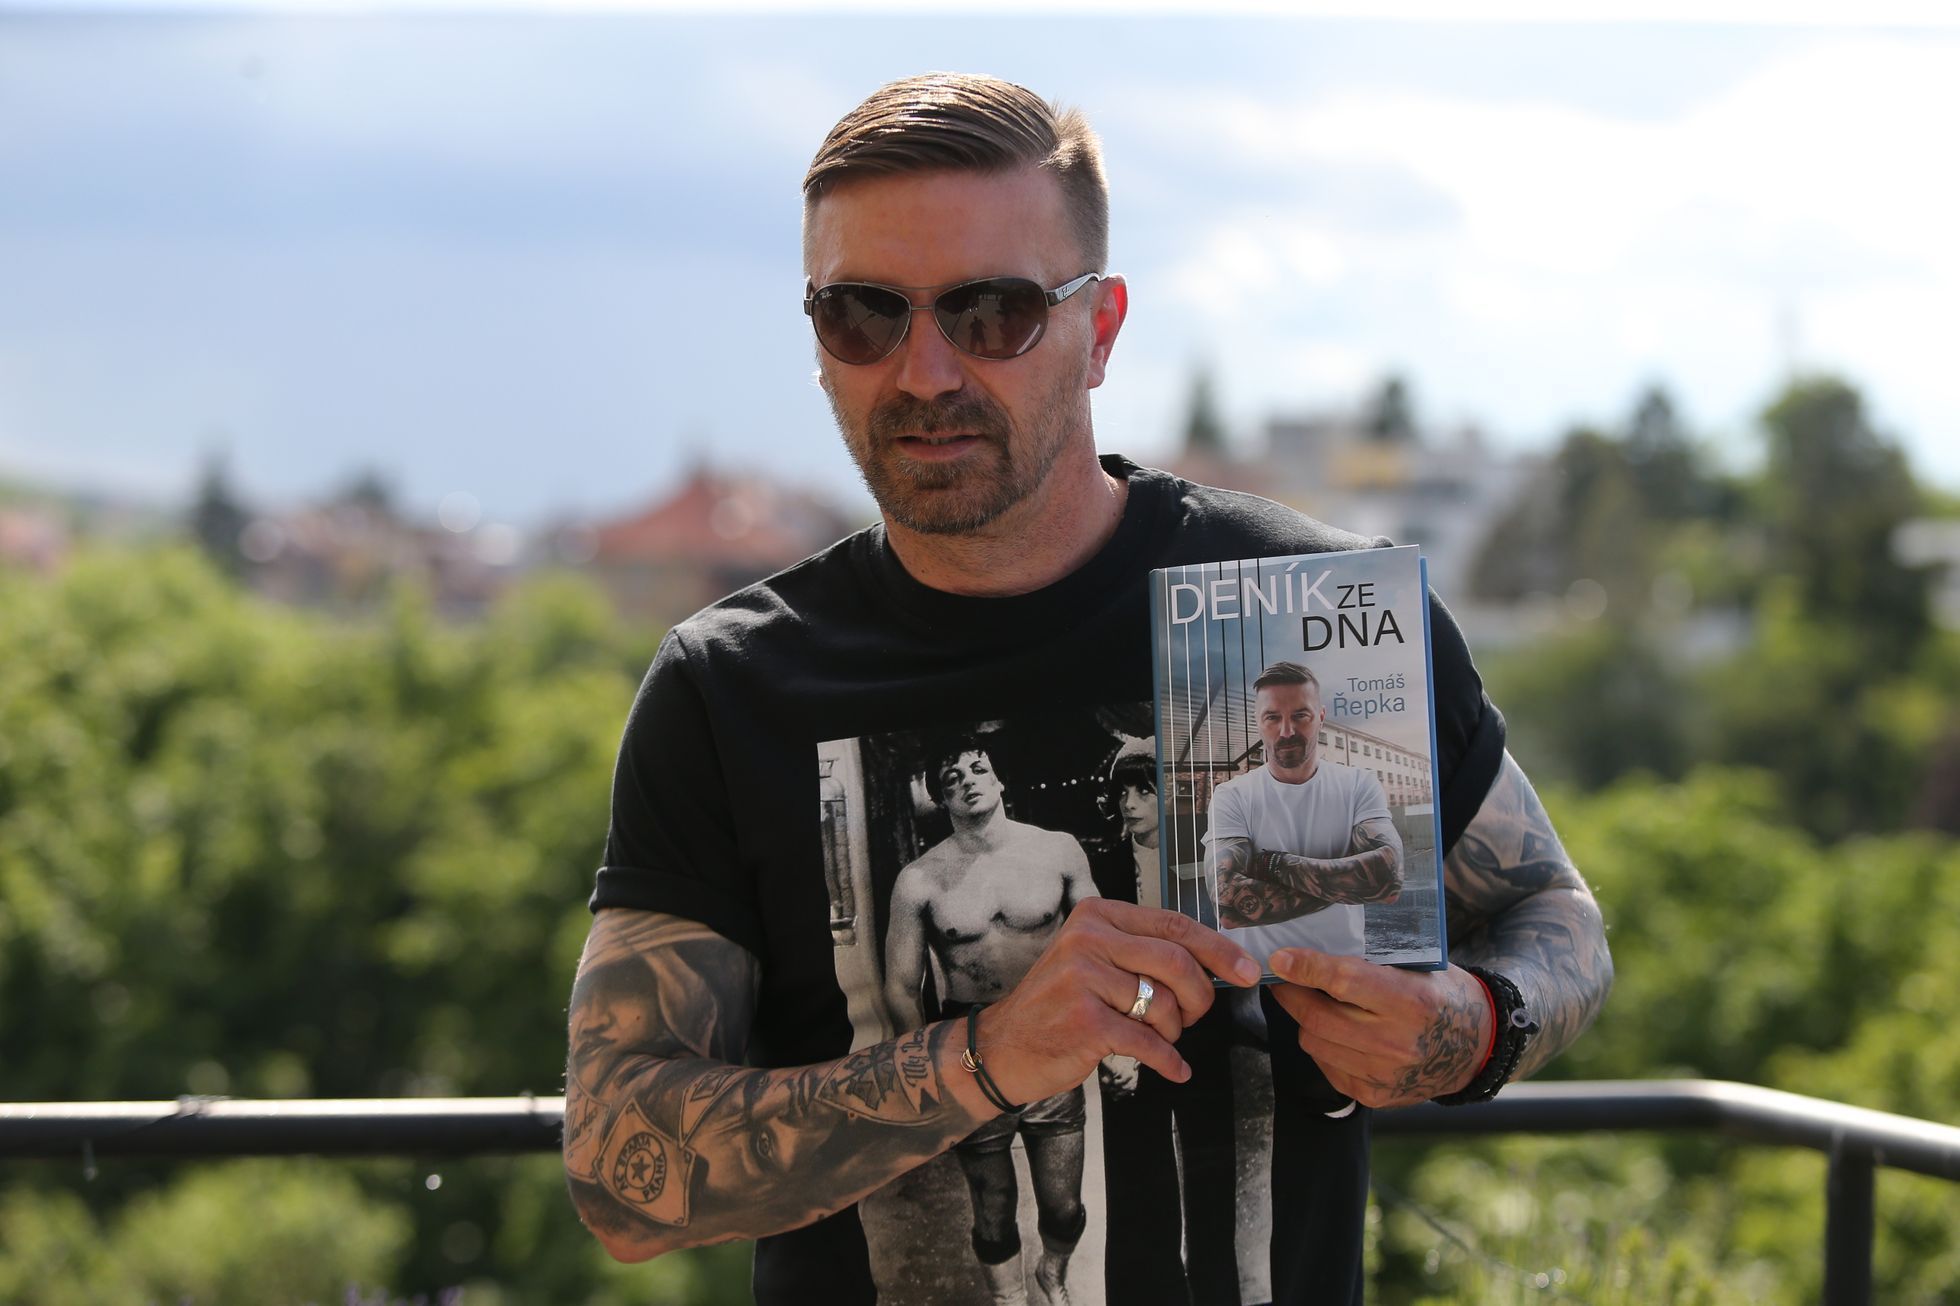 Tomáš Řepka při křtu své knihy Deník ze dna